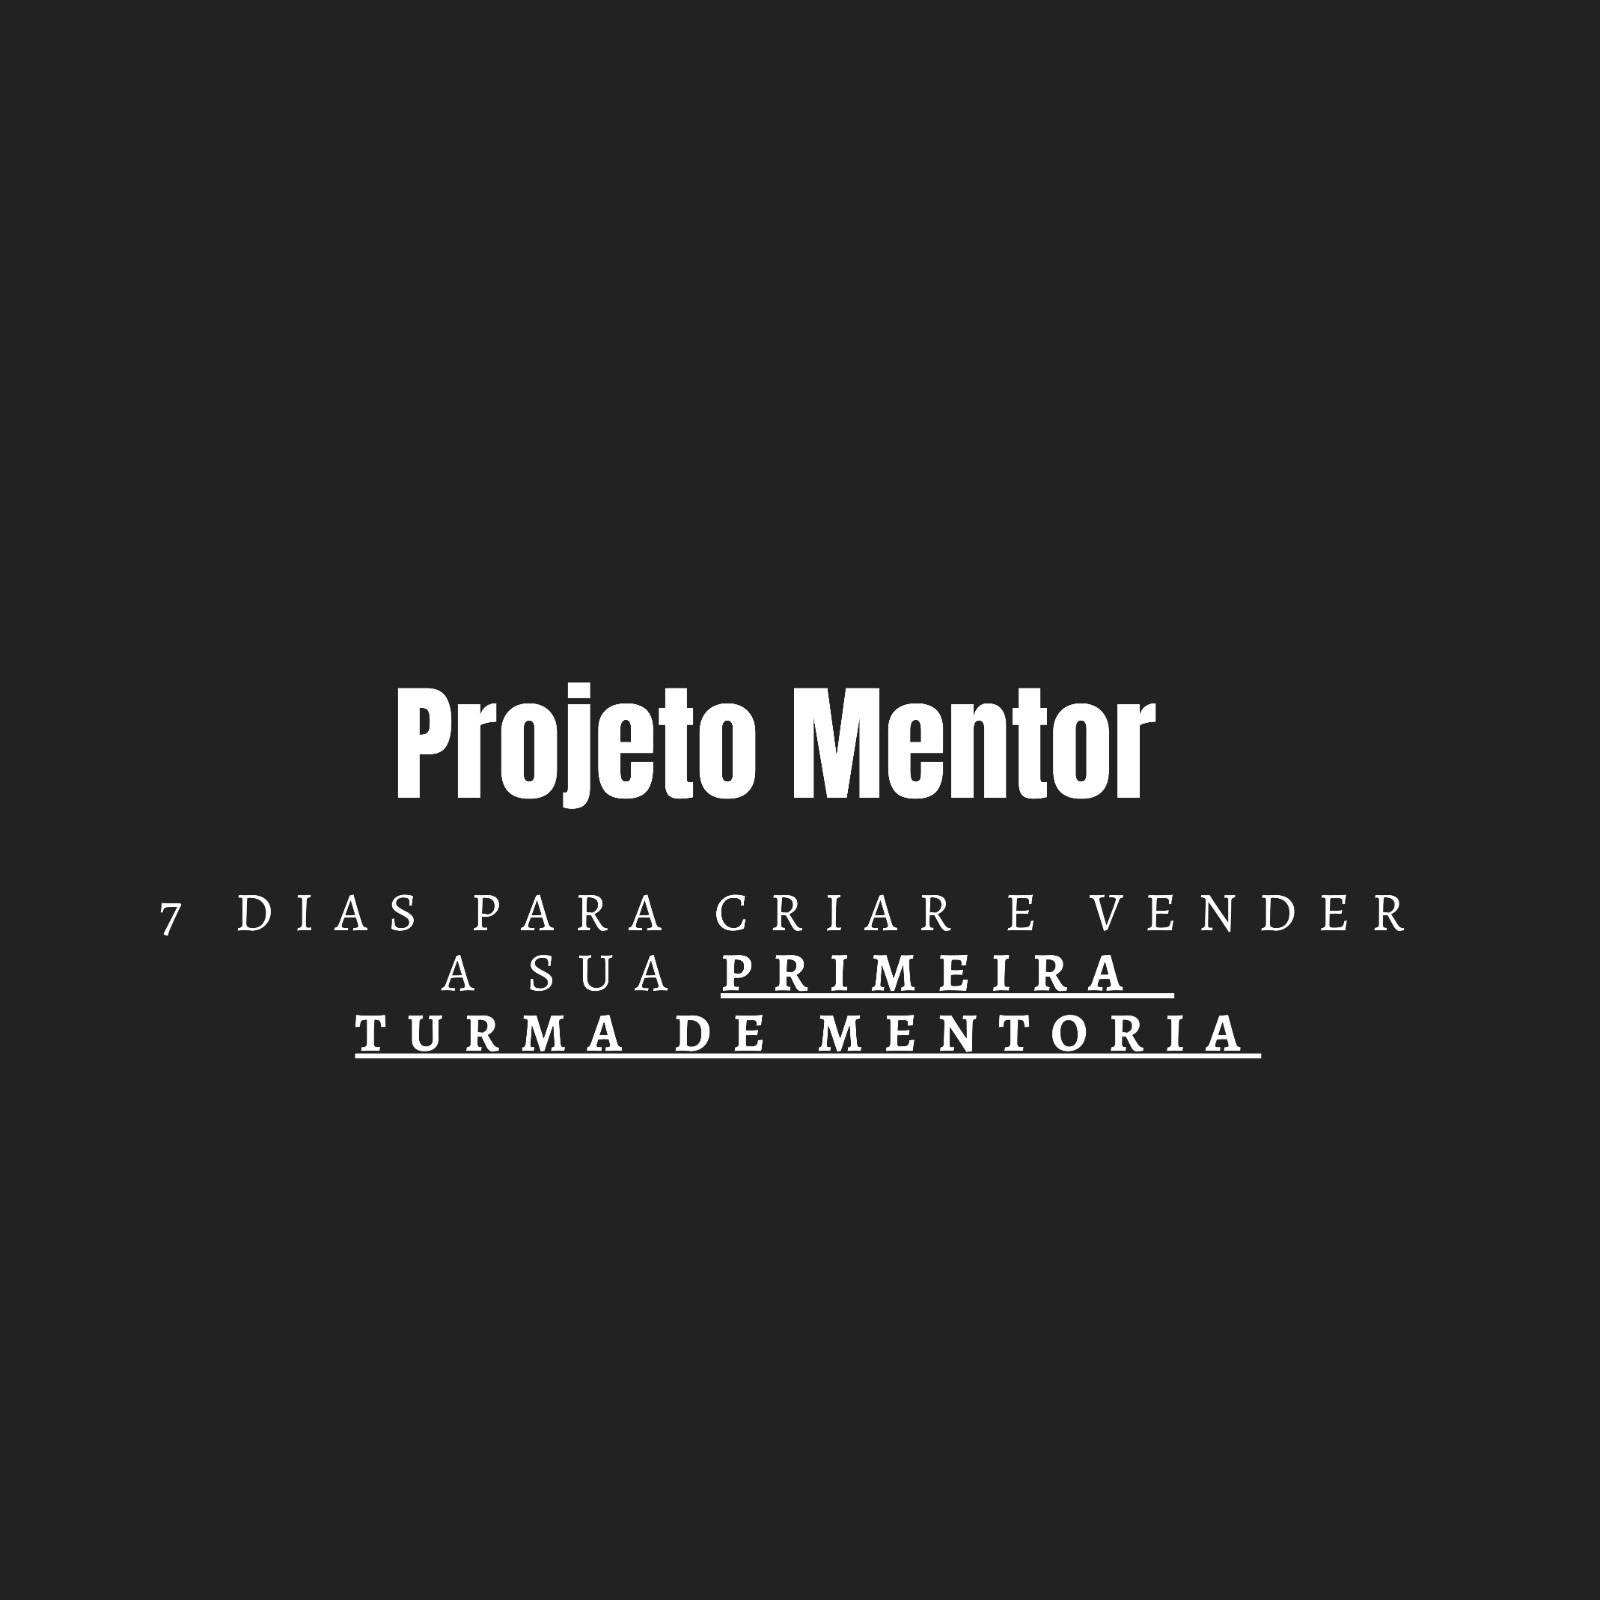 Projeto Mentor 198